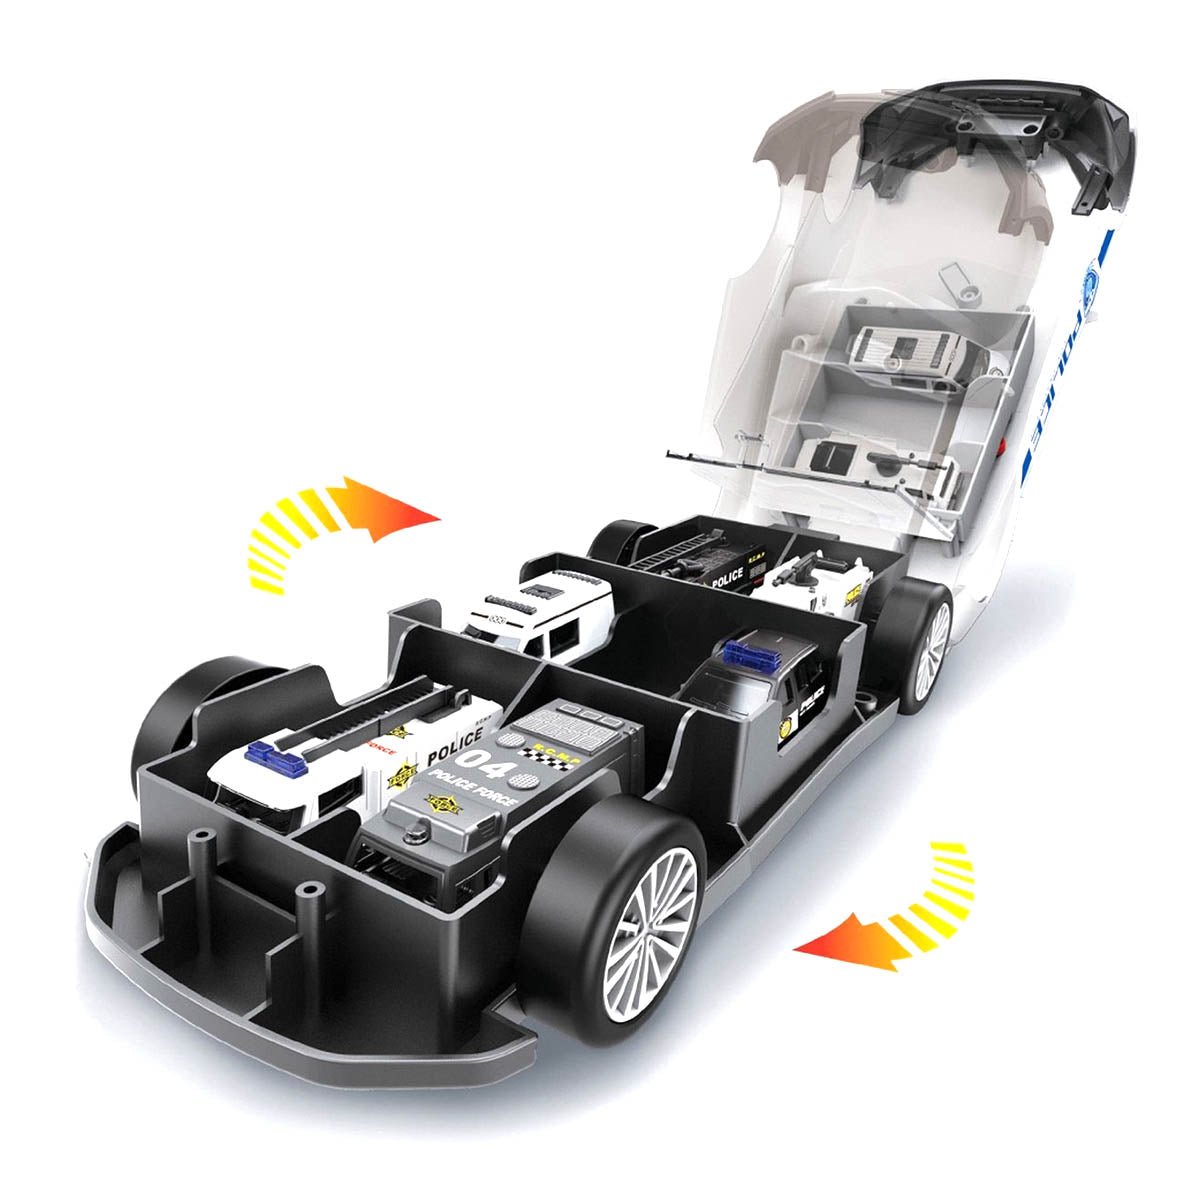 Ariko XL Politie Auto set - Maar liefst 1:64 - 3 extra auto's - opbergvakken in de auto - politieman - met licht en geluid - inclusief batterijen